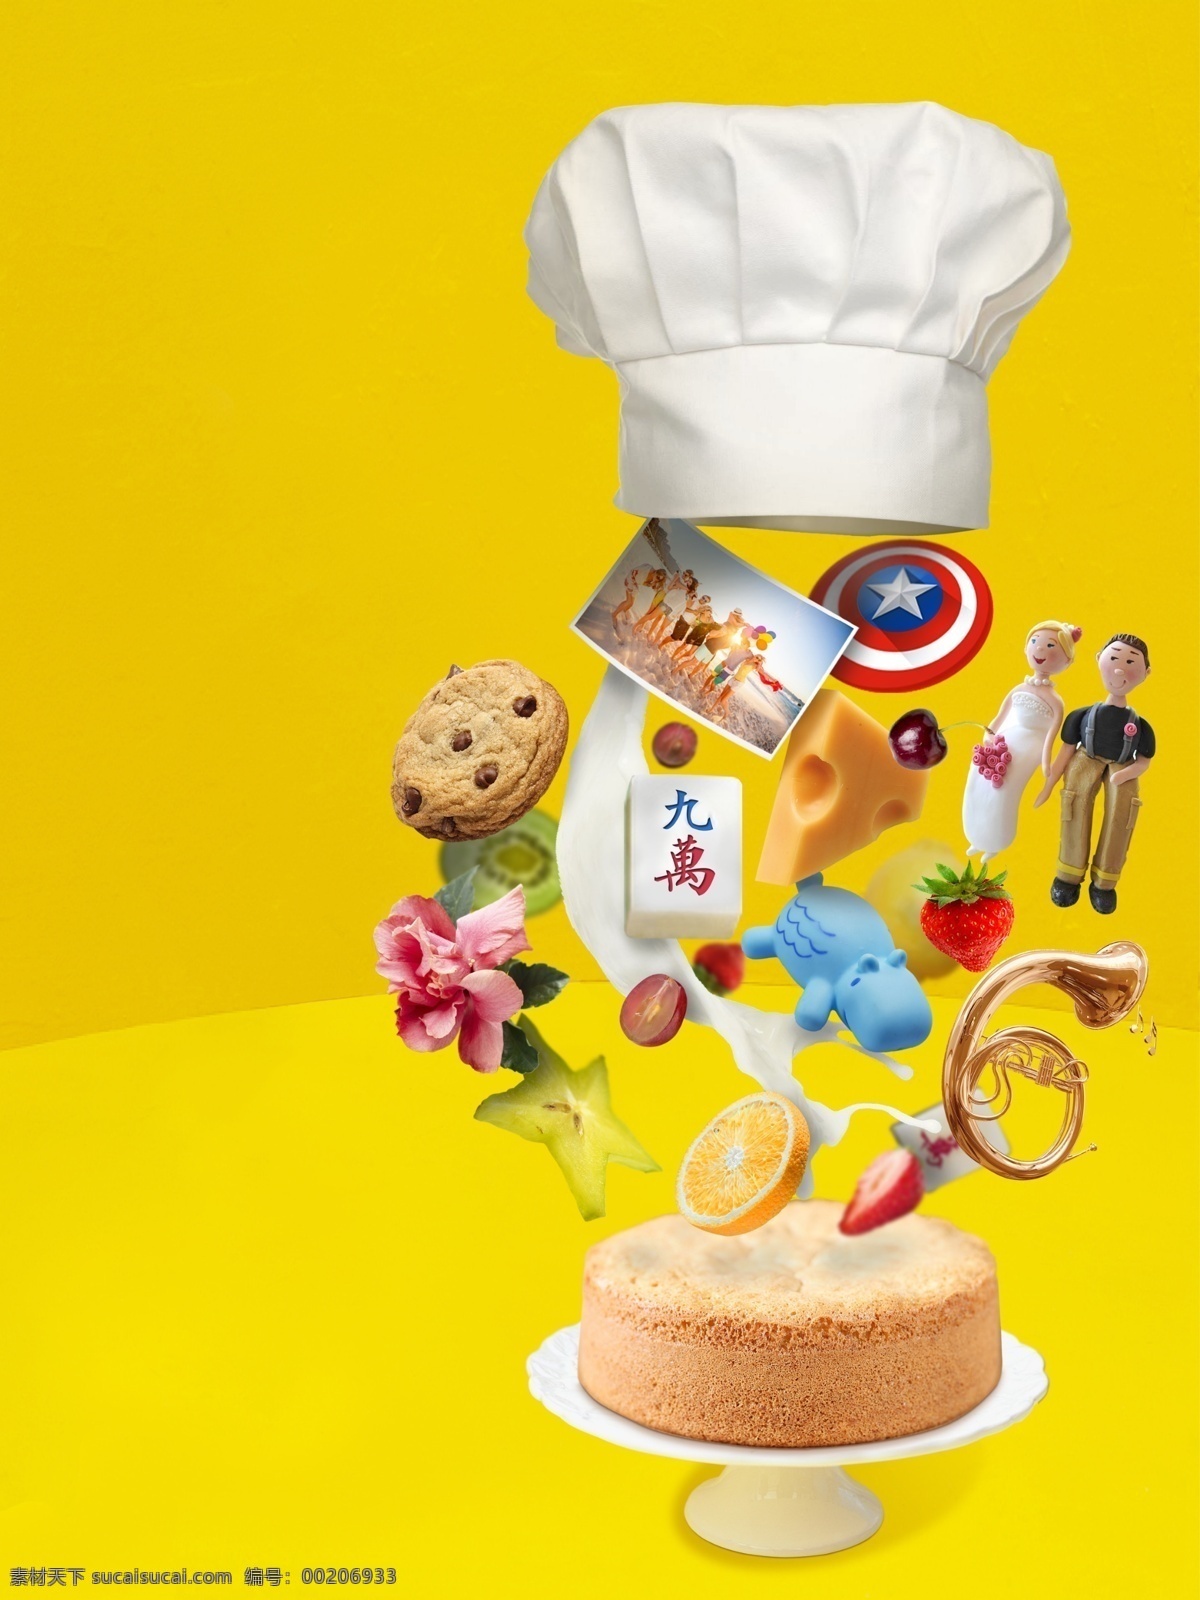 定制蛋糕 定制 蛋糕 面包 创意 厨师帽 个性 专属 蛋糕胚 黄色 私人定制 面包店 蛋糕店 蛋糕品牌 冲击力 甜品 国际 海报 视觉 招贴设计